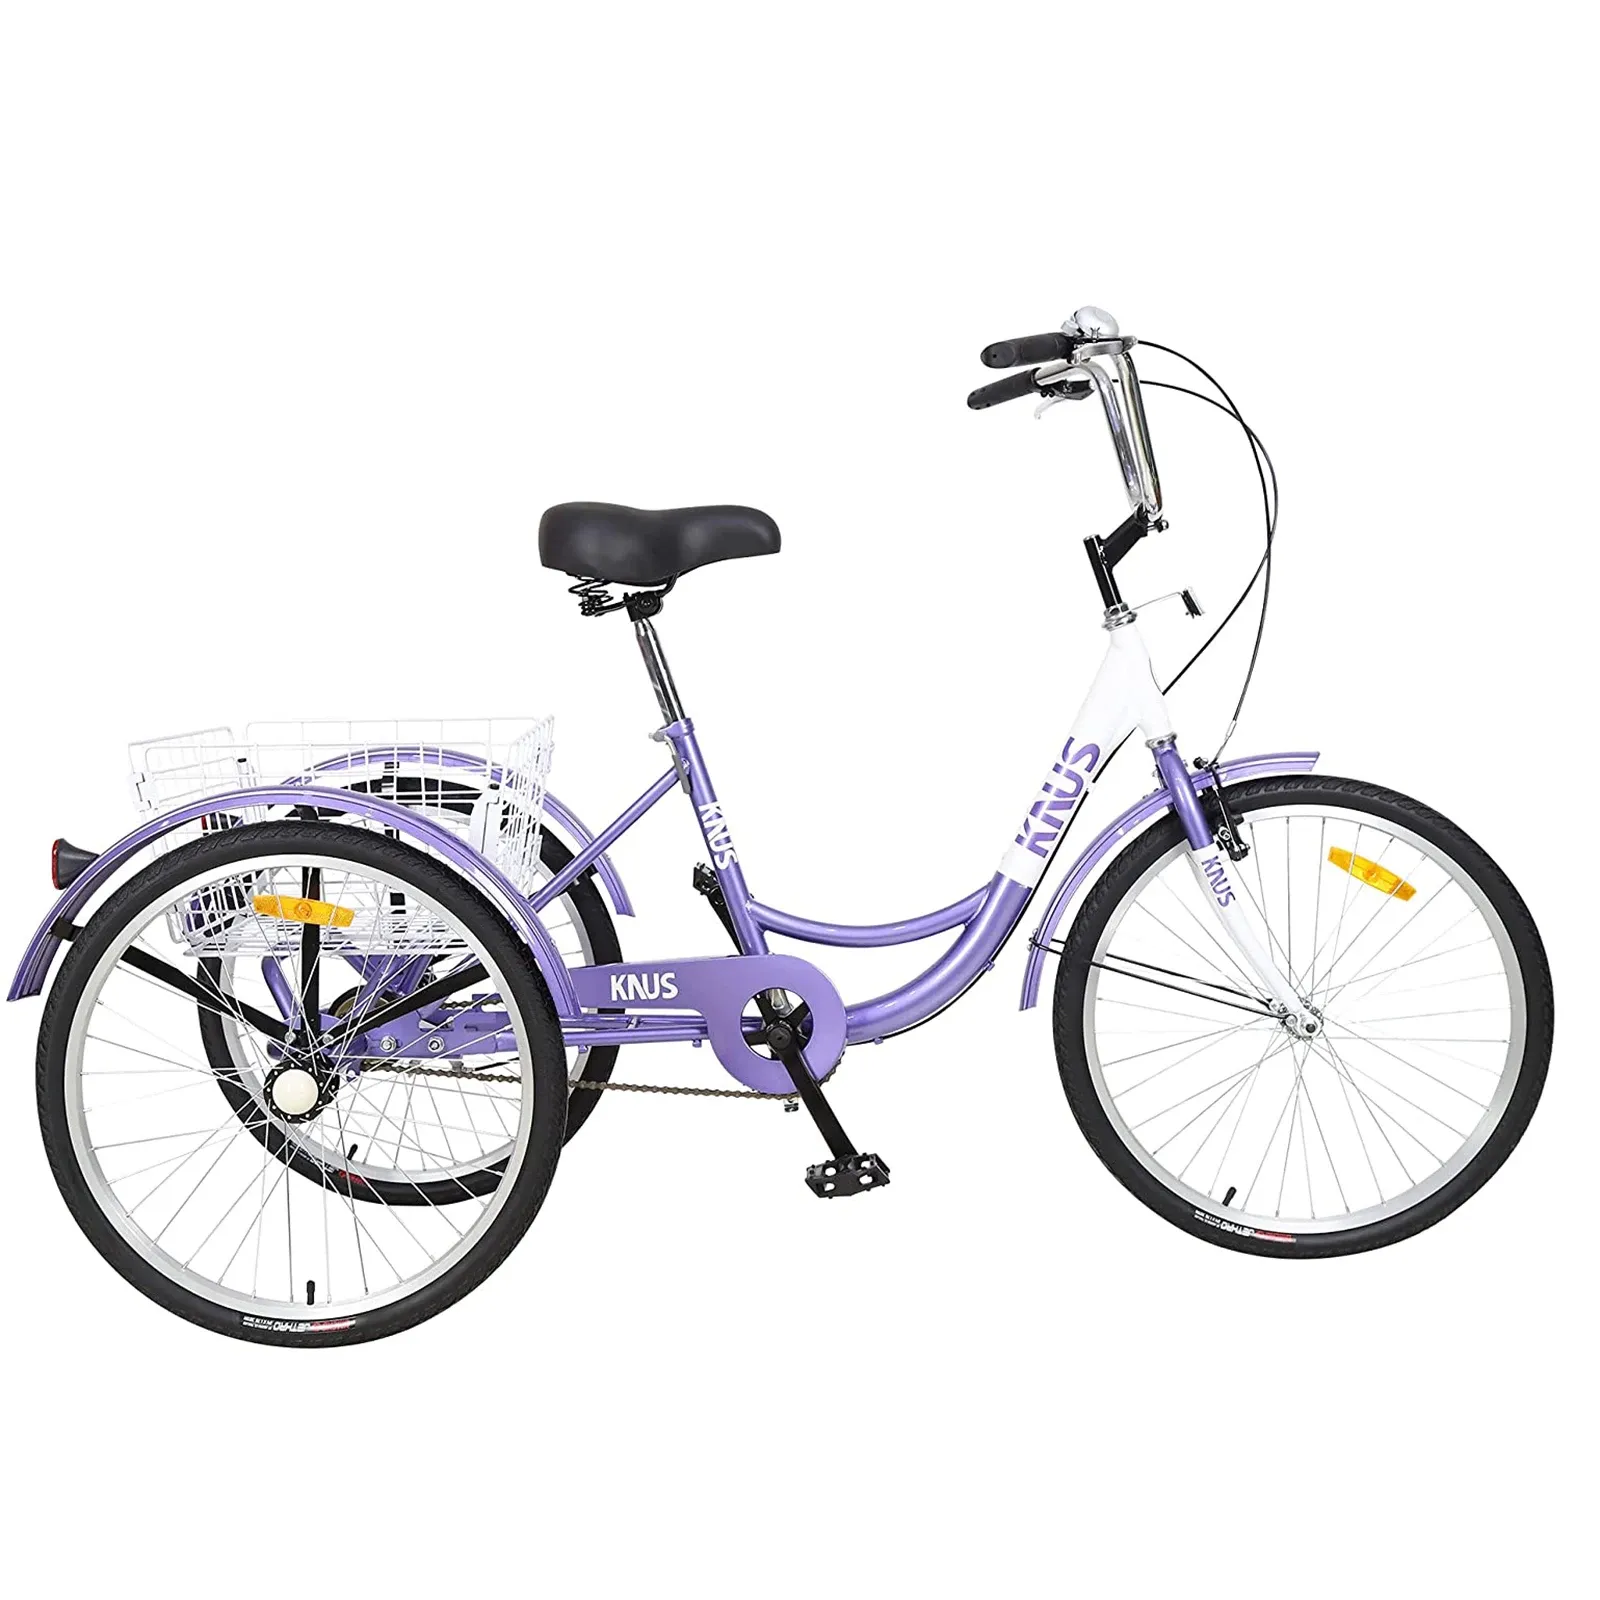 Cykel Vuxen trehjuling 26 tum, 3 -hjuls kryssningscykel, justerbar trike med klocka, bromssystem kryssare cyklar stor korg för shopping